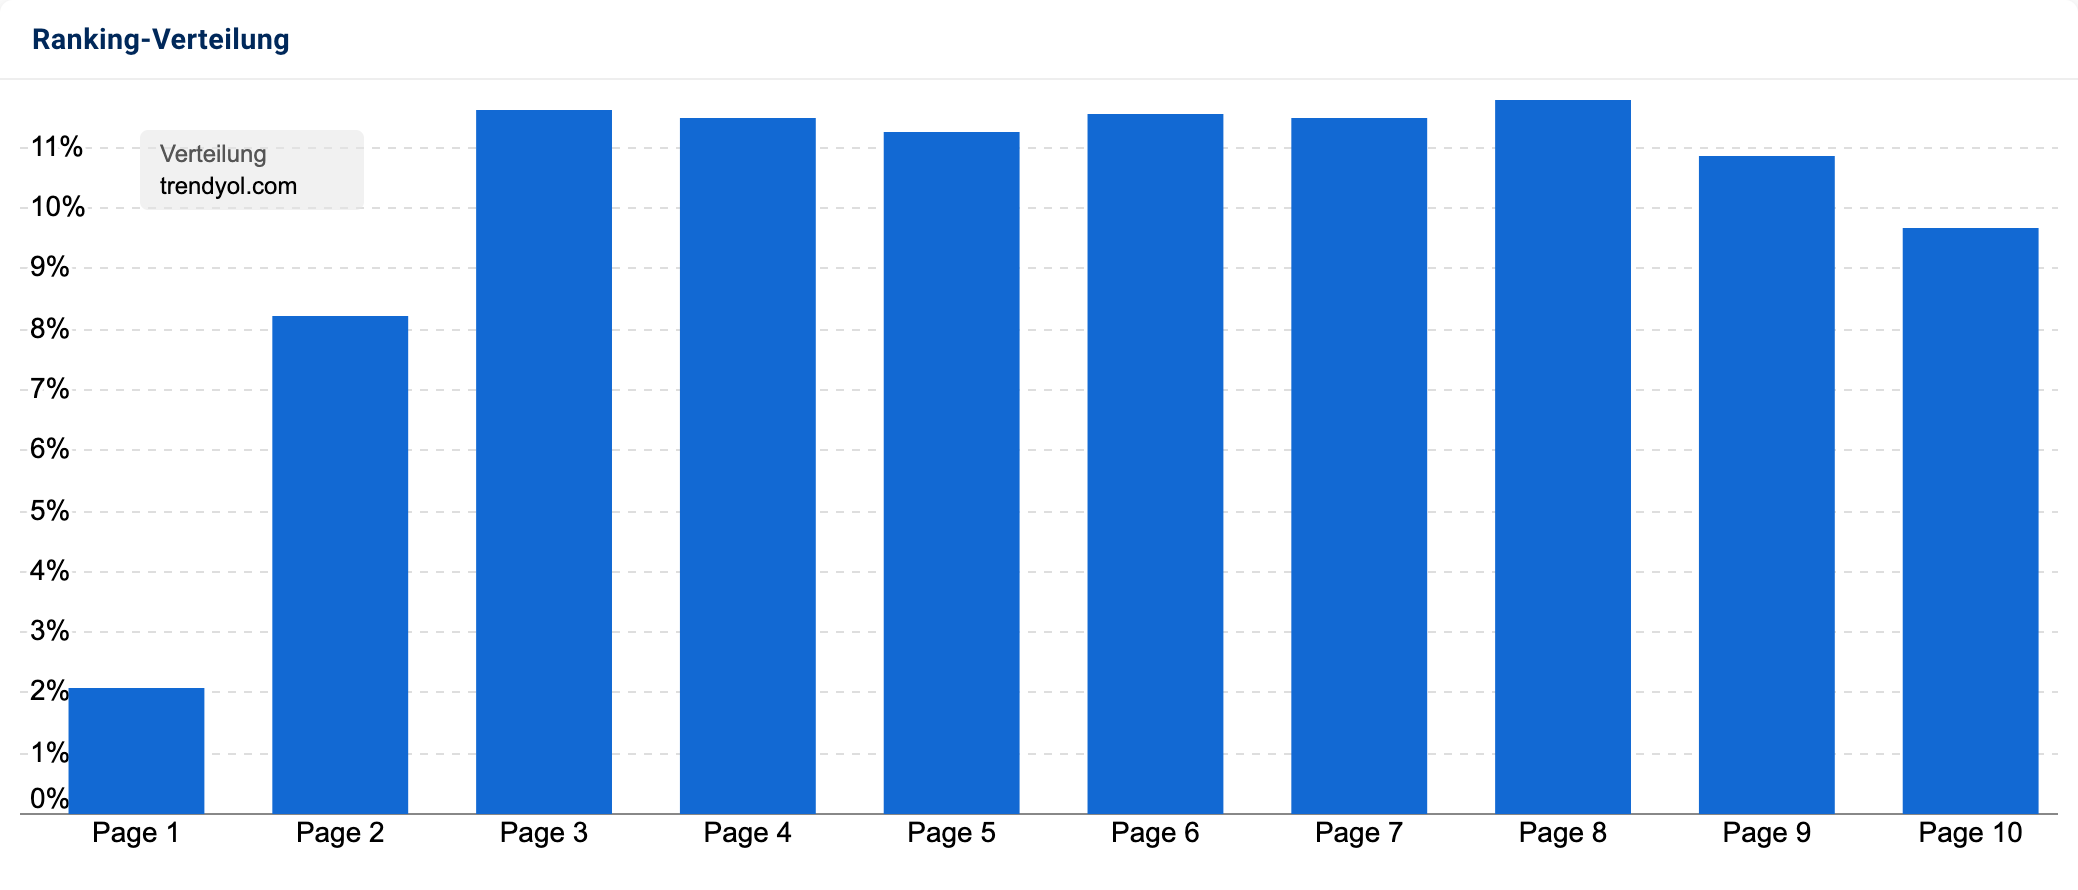 Die Ranking-Verteilung der Domain trendyol.com. Der Graph zeigt, dass nur rund 2 % der Keywords auf Seite 1 bei Google ranken.